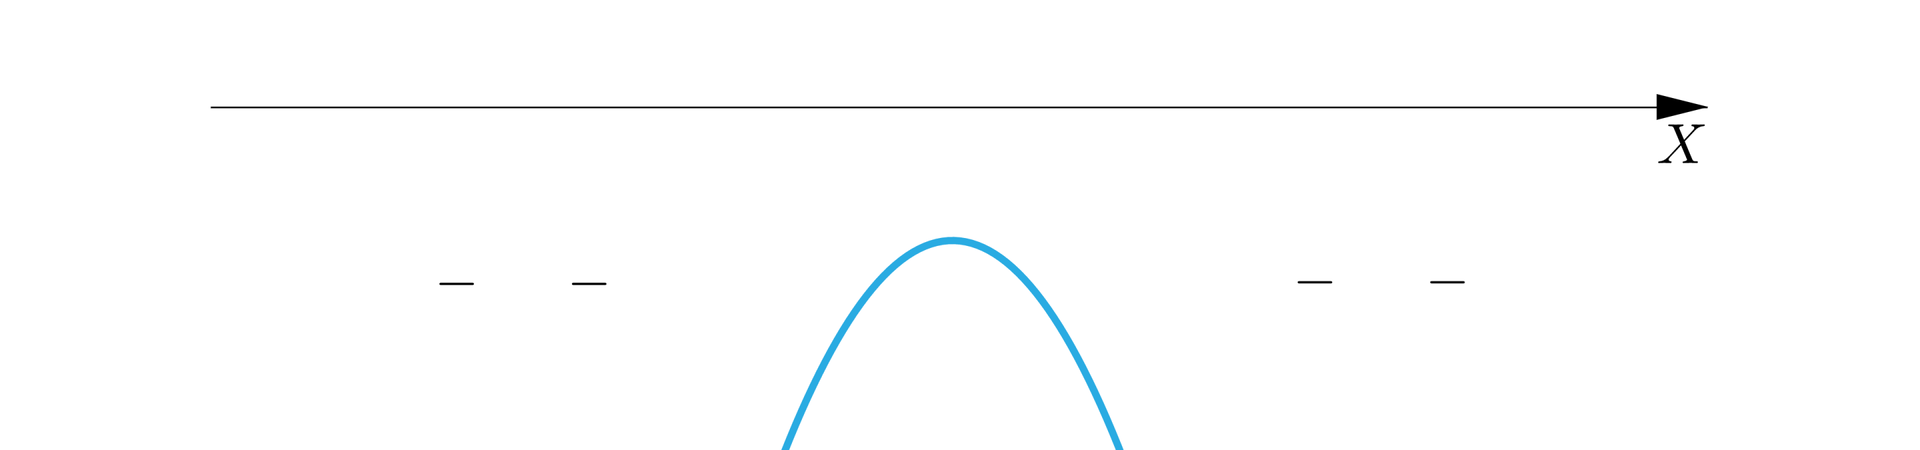 Rysunek przedstawia poziomą oś X. Pod osią narysowano wykres wielomianu, który nie ma z osią żadnych punktów wspólnych. Fakt, iż wykres przebiega pod osią, zaznaczono minusami narysowanymi pod osią.